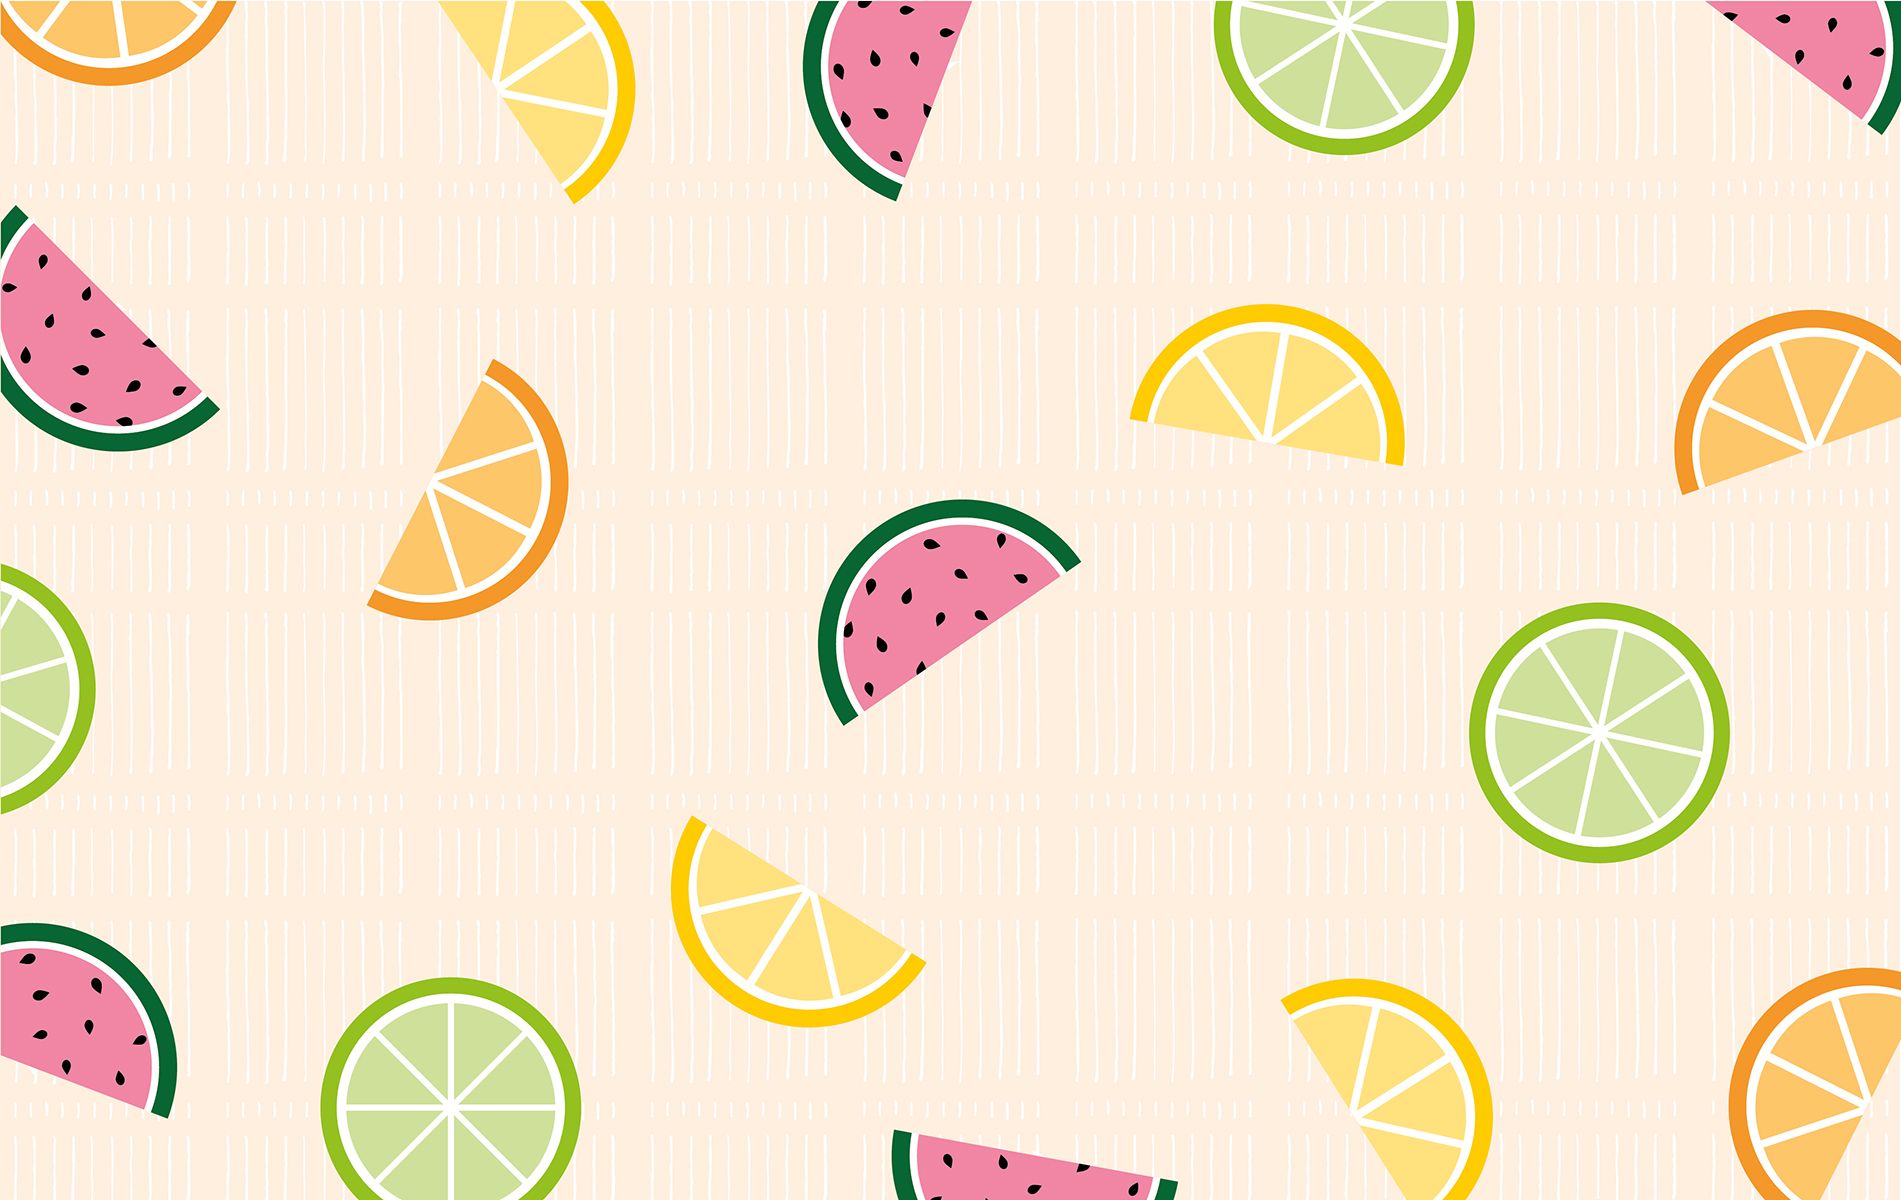 1901X1200 Cute Summer Desktop Wallpapers - Top Free Cute Summer Desktop Bac...